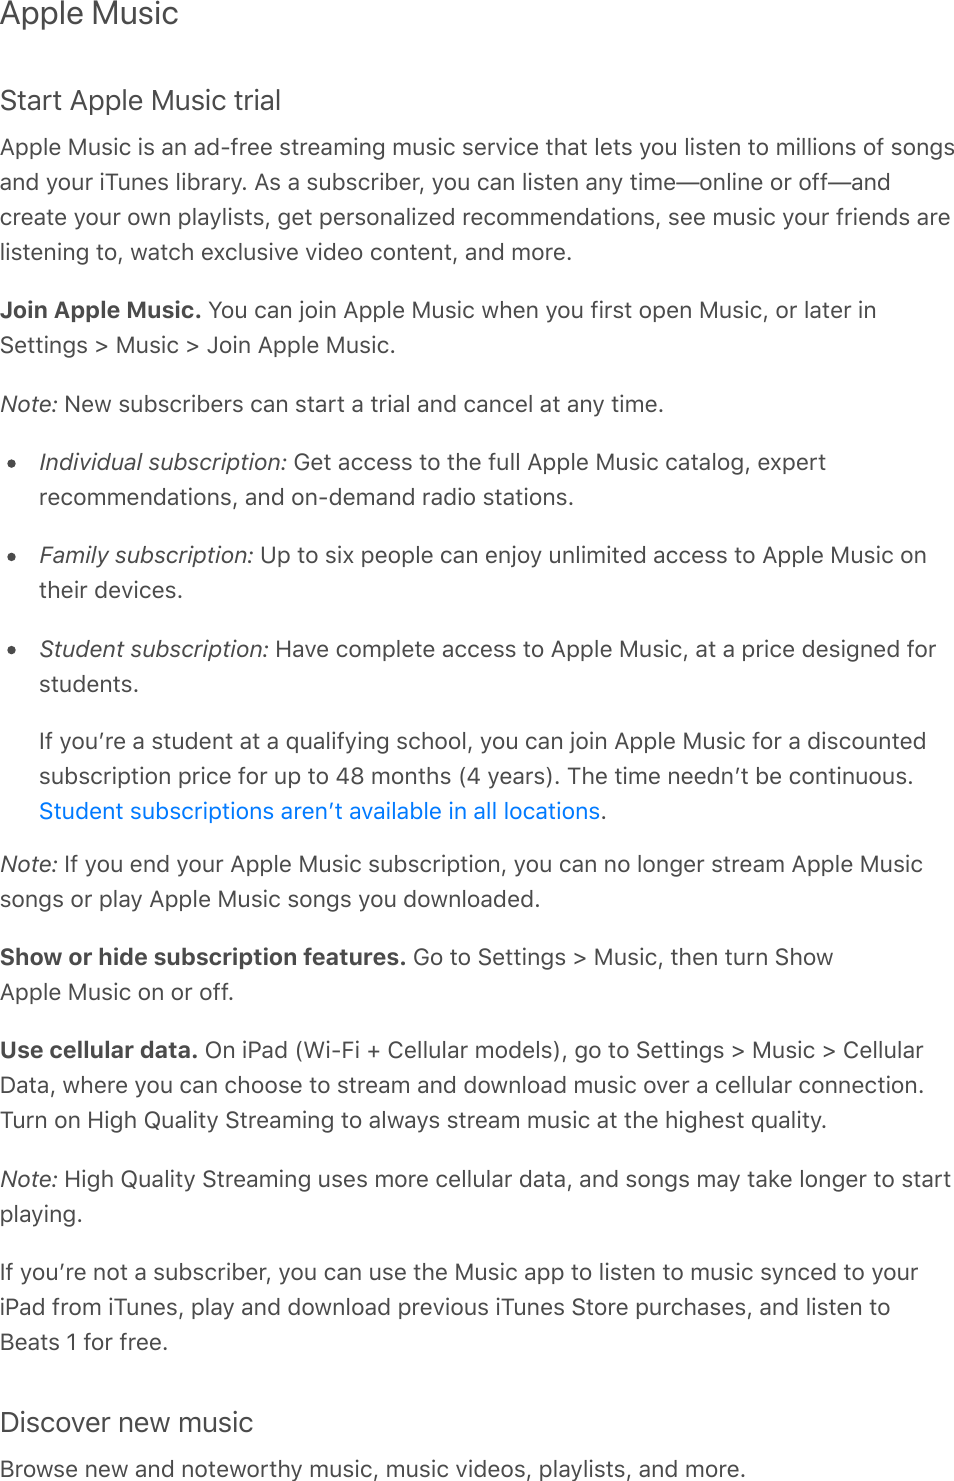 Apple Music42,/2(955&amp;0(1&quot;-#$(2/#,&amp;955&amp;0(1&quot;-#$(#-(,*(,+S)/00(-2/0,&gt;#*A(&gt;&quot;-#$(-0/8#$0(2.,2(&amp;02-(&apos;:&quot;(&amp;#-20*(2:(&gt;#&amp;&amp;#:*-(:)(-:*A-,*+(&apos;:&quot;/(#K&quot;*0-(&amp;#&lt;/,/&apos;?(9-(,(-&quot;&lt;-$/#&lt;0/D(&apos;:&quot;($,*(&amp;#-20*(,*&apos;(2#&gt;0h:*&amp;#*0(:/(:))h,*+$/0,20(&apos;:&quot;/(:3*(5&amp;,&apos;&amp;#-2-D(A02(50/-:*,&amp;#I0+(/0$:&gt;&gt;0*+,2#:*-D(-00(&gt;&quot;-#$(&apos;:&quot;/()/#0*+-(,/0&amp;#-20*#*A(2:D(3,2$.(0`$&amp;&quot;-#80(8#+0:($:*20*2D(,*+(&gt;:/0?Join Apple Music. N:&quot;($,*(g:#*(955&amp;0(1&quot;-#$(3.0*(&apos;:&quot;()#/-2(:50*(1&quot;-#$D(:/(&amp;,20/(#*4022#*A-(d(1&quot;-#$(d(j:#*(955&amp;0(1&quot;-#$?Note: ;03(-&quot;&lt;-$/#&lt;0/-($,*(-2,/2(,(2/#,&amp;(,*+($,*$0&amp;(,2(,*&apos;(2#&gt;0?Individual subscription: E02(,$$0--(2:(2.0()&quot;&amp;&amp;(955&amp;0(1&quot;-#$($,2,&amp;:AD(0`50/2/0$:&gt;&gt;0*+,2#:*-D(,*+(:*S+0&gt;,*+(/,+#:(-2,2#:*-?Family subscription: Z5(2:(-#`(50:5&amp;0($,*(0*g:&apos;(&quot;*&amp;#&gt;#20+(,$$0--(2:(955&amp;0(1&quot;-#$(:*2.0#/(+08#$0-?Student subscription: B,80($:&gt;5&amp;020(,$$0--(2:(955&amp;0(1&quot;-#$D(,2(,(5/#$0(+0-#A*0+():/-2&quot;+0*2-?\)(&apos;:&quot;F/0(,(-2&quot;+0*2(,2(,(c&quot;,&amp;#)&apos;#*A(-$.::&amp;D(&apos;:&quot;($,*(g:#*(955&amp;0(1&quot;-#$():/(,(+#-$:&quot;*20+-&quot;&lt;-$/#52#:*(5/#$0():/(&quot;5(2:(Yo(&gt;:*2.-(PY(&apos;0,/-T?(K.0(2#&gt;0(*00+*F2(&lt;0($:*2#*&quot;:&quot;-??Note: \)(&apos;:&quot;(0*+(&apos;:&quot;/(955&amp;0(1&quot;-#$(-&quot;&lt;-$/#52#:*D(&apos;:&quot;($,*(*:(&amp;:*A0/(-2/0,&gt;(955&amp;0(1&quot;-#$-:*A-(:/(5&amp;,&apos;(955&amp;0(1&quot;-#$(-:*A-(&apos;:&quot;(+:3*&amp;:,+0+?Show or hide subscription features. E:(2:(4022#*A-(d(1&quot;-#$D(2.0*(2&quot;/*(4.:3955&amp;0(1&quot;-#$(:*(:/(:))?Use cellular data. 7*(#=,+(P@#SC#(f(O0&amp;&amp;&quot;&amp;,/(&gt;:+0&amp;-TD(A:(2:(4022#*A-(d(1&quot;-#$(d(O0&amp;&amp;&quot;&amp;,/],2,D(3.0/0(&apos;:&quot;($,*($.::-0(2:(-2/0,&gt;(,*+(+:3*&amp;:,+(&gt;&quot;-#$(:80/(,($0&amp;&amp;&quot;&amp;,/($:**0$2#:*?K&quot;/*(:*(B#A.(!&quot;,&amp;#2&apos;(42/0,&gt;#*A(2:(,&amp;3,&apos;-(-2/0,&gt;(&gt;&quot;-#$(,2(2.0(.#A.0-2(c&quot;,&amp;#2&apos;?Note: B#A.(!&quot;,&amp;#2&apos;(42/0,&gt;#*A(&quot;-0-(&gt;:/0($0&amp;&amp;&quot;&amp;,/(+,2,D(,*+(-:*A-(&gt;,&apos;(2,%0(&amp;:*A0/(2:(-2,/25&amp;,&apos;#*A?\)(&apos;:&quot;F/0(*:2(,(-&quot;&lt;-$/#&lt;0/D(&apos;:&quot;($,*(&quot;-0(2.0(1&quot;-#$(,55(2:(&amp;#-20*(2:(&gt;&quot;-#$(-&apos;*$0+(2:(&apos;:&quot;/#=,+()/:&gt;(#K&quot;*0-D(5&amp;,&apos;(,*+(+:3*&amp;:,+(5/08#:&quot;-(#K&quot;*0-(42:/0(5&quot;/$.,-0-D(,*+(&amp;#-20*(2:H0,2-(G():/()/00?]#-$:80/(*03(&gt;&quot;-#$H/:3-0(*03(,*+(*:203:/2.&apos;(&gt;&quot;-#$D(&gt;&quot;-#$(8#+0:-D(5&amp;,&apos;&amp;#-2-D(,*+(&gt;:/0?42&quot;+0*2(-&quot;&lt;-$/#52#:*-(,/0*F2(,8,#&amp;,&lt;&amp;0(#*(,&amp;&amp;(&amp;:$,2#:*-